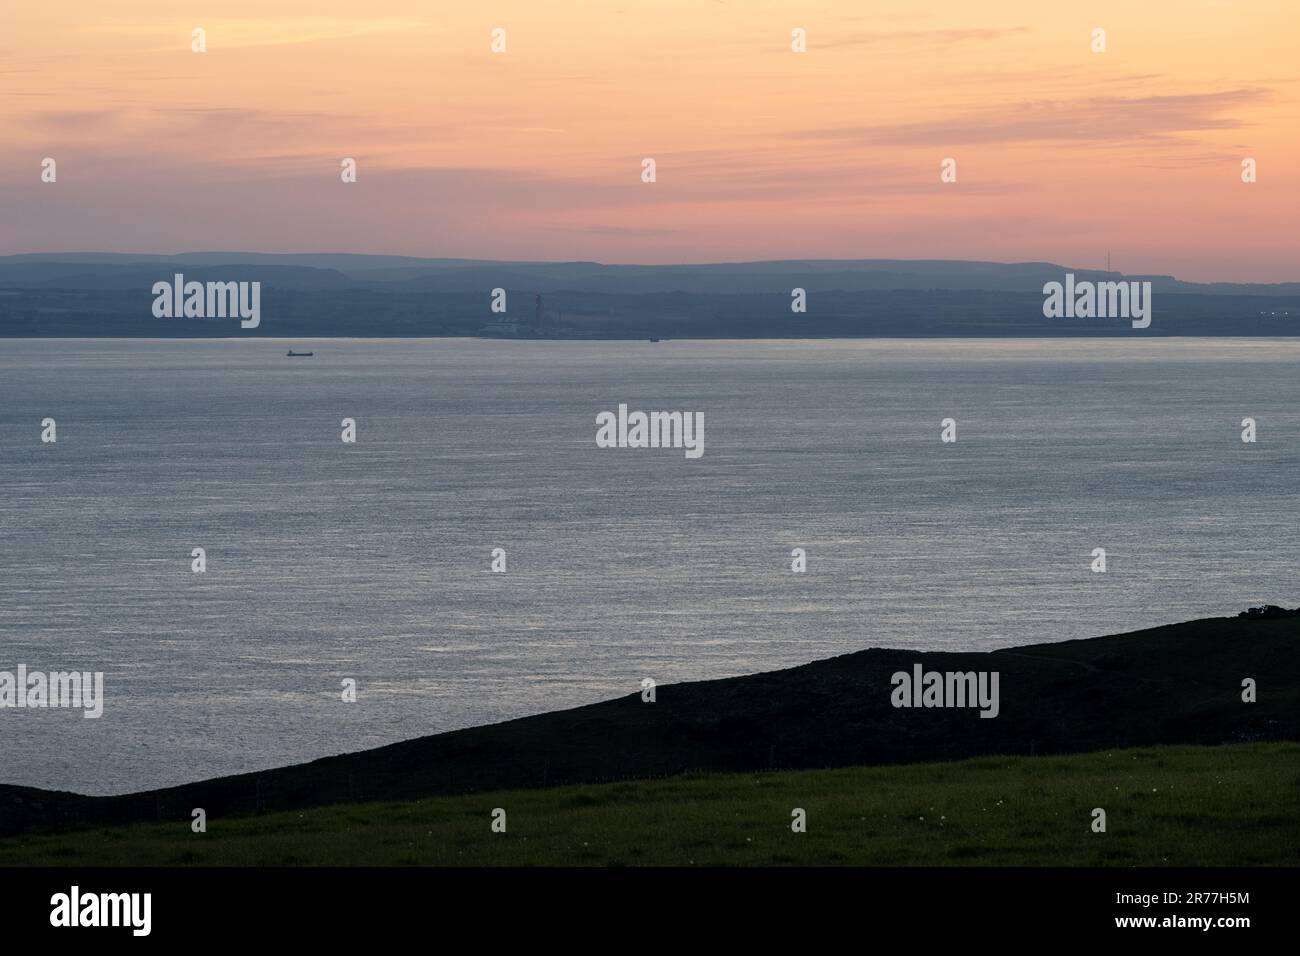 La luce dell'alba cade sulla costa e sulle colline del Galles del Sud, tra cui i punti di riferimento della centrale elettrica di Aberthaw, Garth Hill e il trasmettitore di Wenvoe, come si vede da avanti Foto Stock